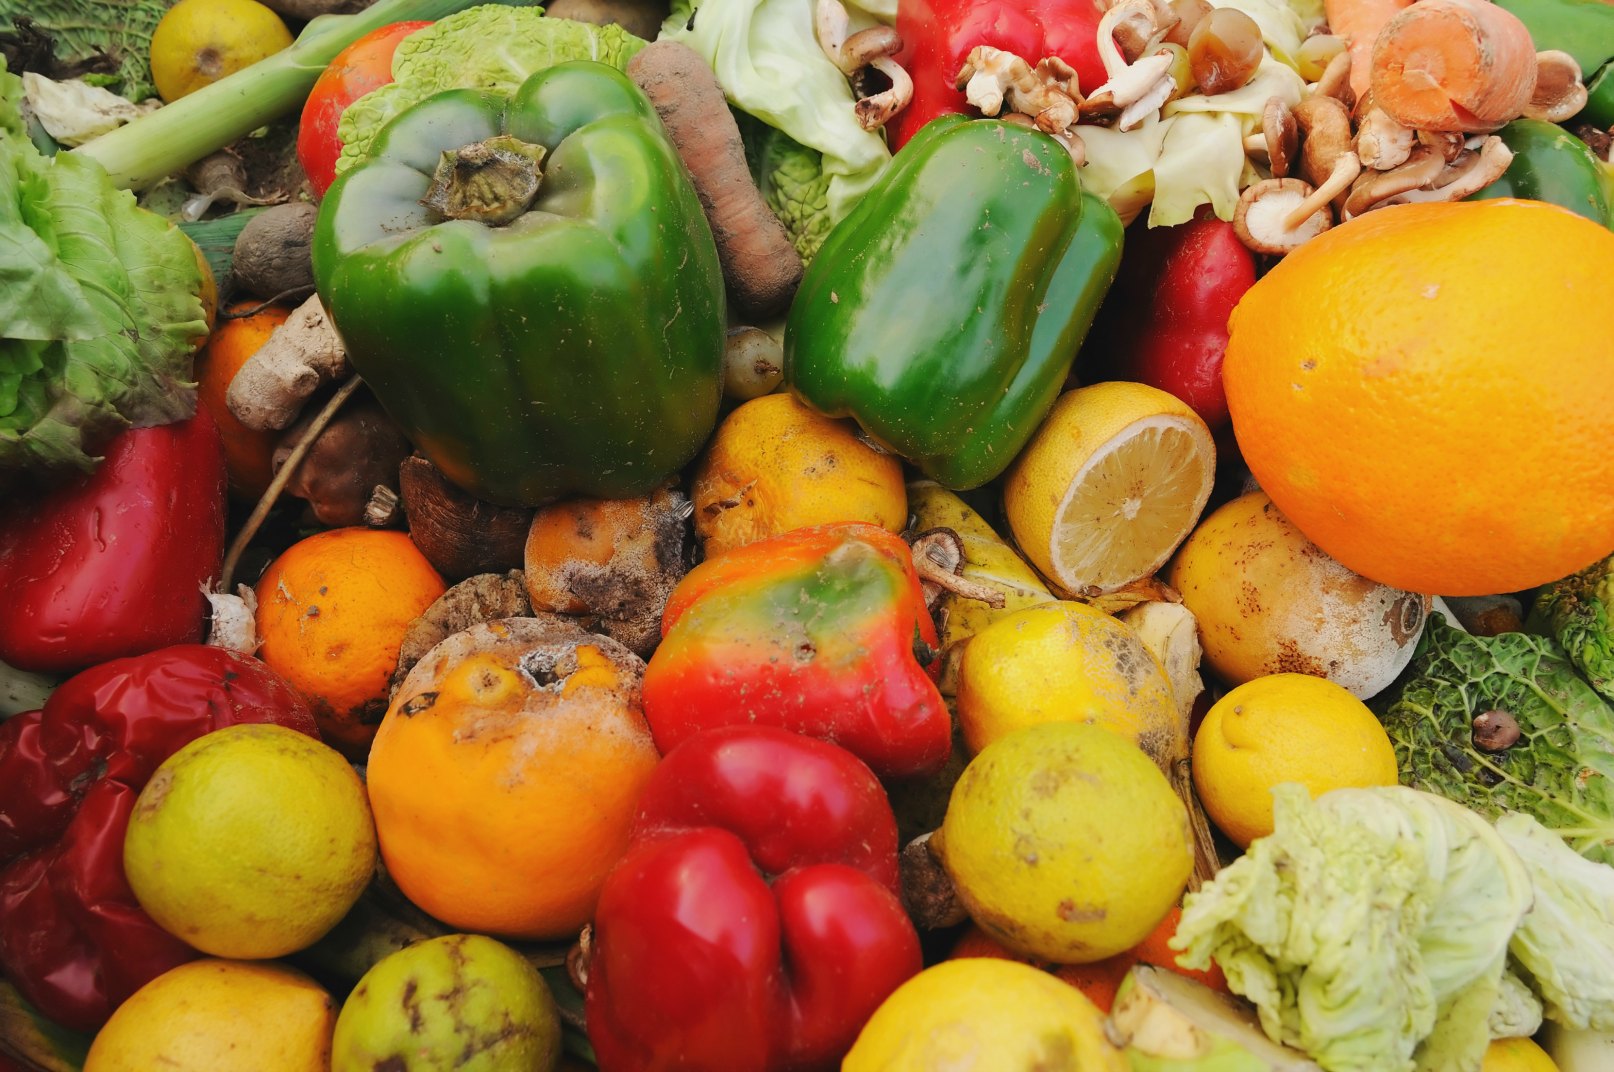 Food waste-Gaspillage alimentaire : dossier scientifique de la Fondation Louis Bonduelle